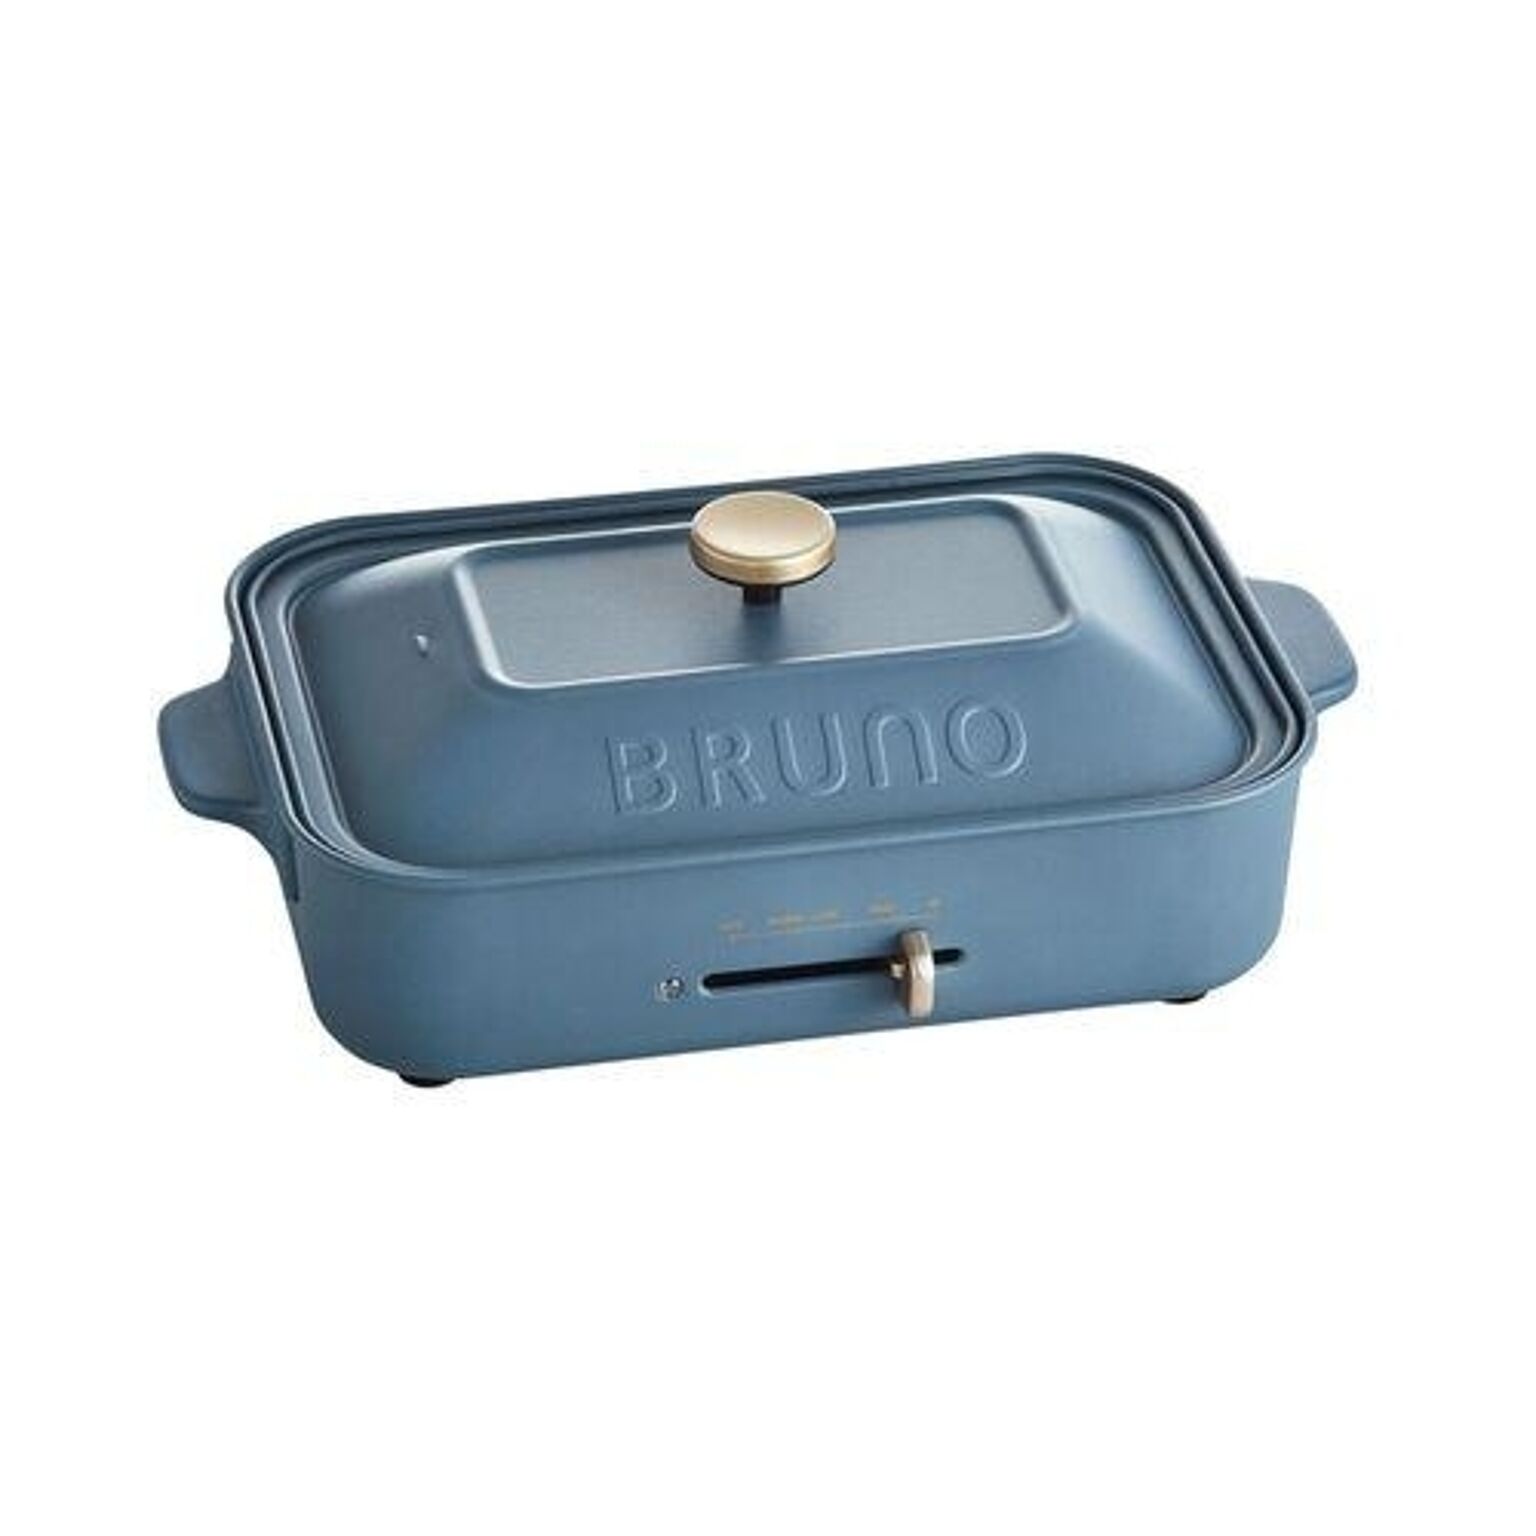 BRUNO コンパクトホットプレート BOE021 ナイトブルー